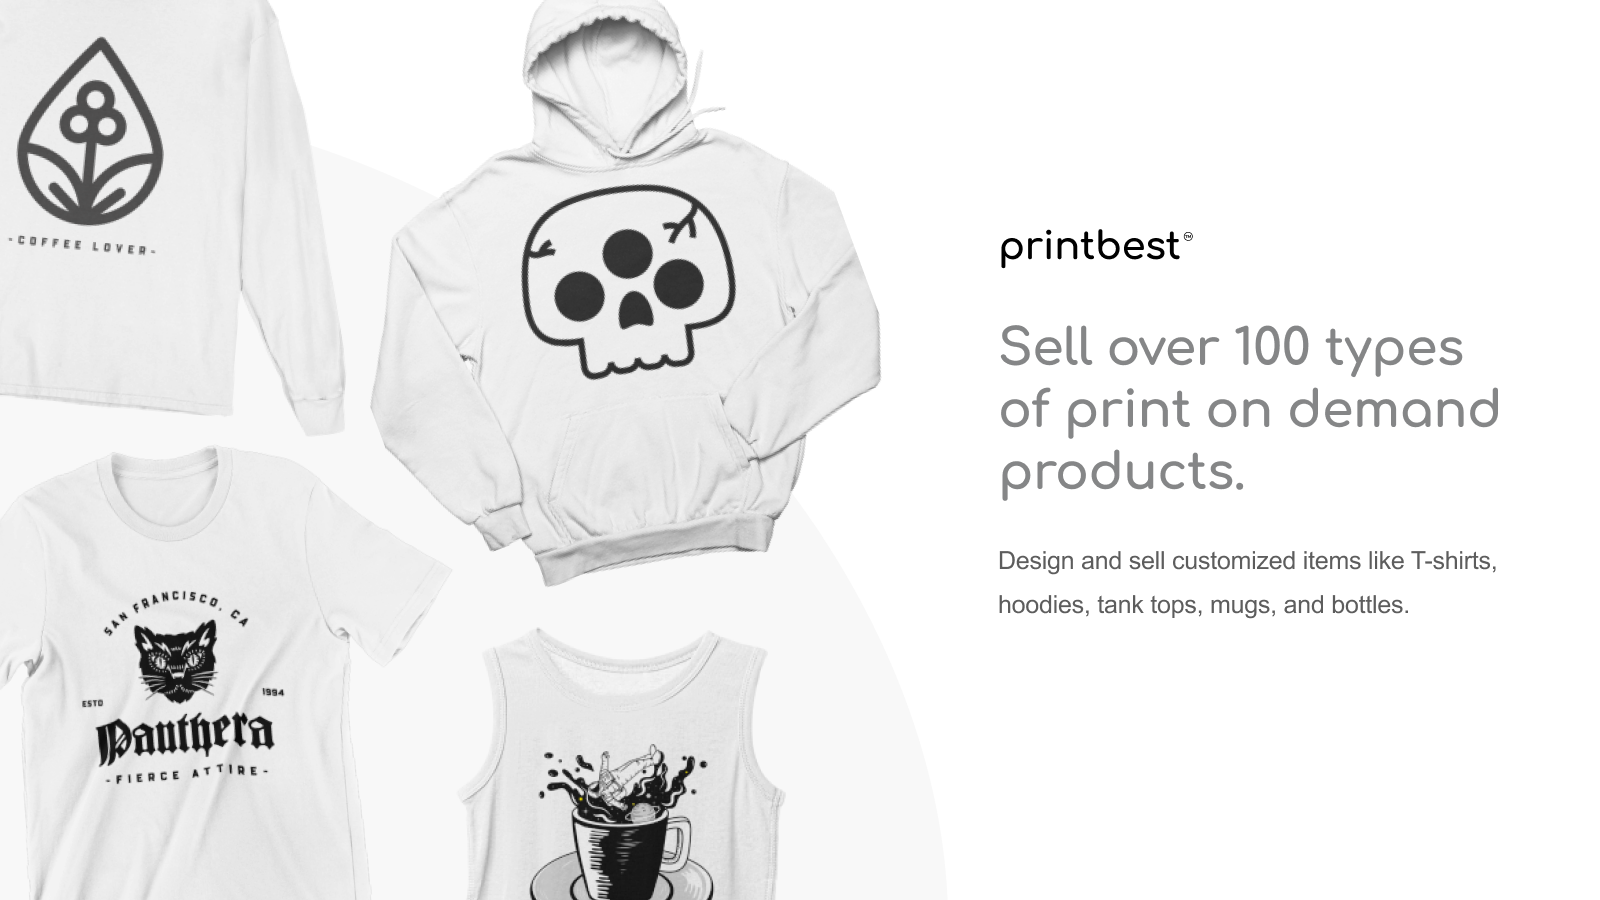 Verkaufen Sie über 100 Arten von Print-on-Demand-Produkten